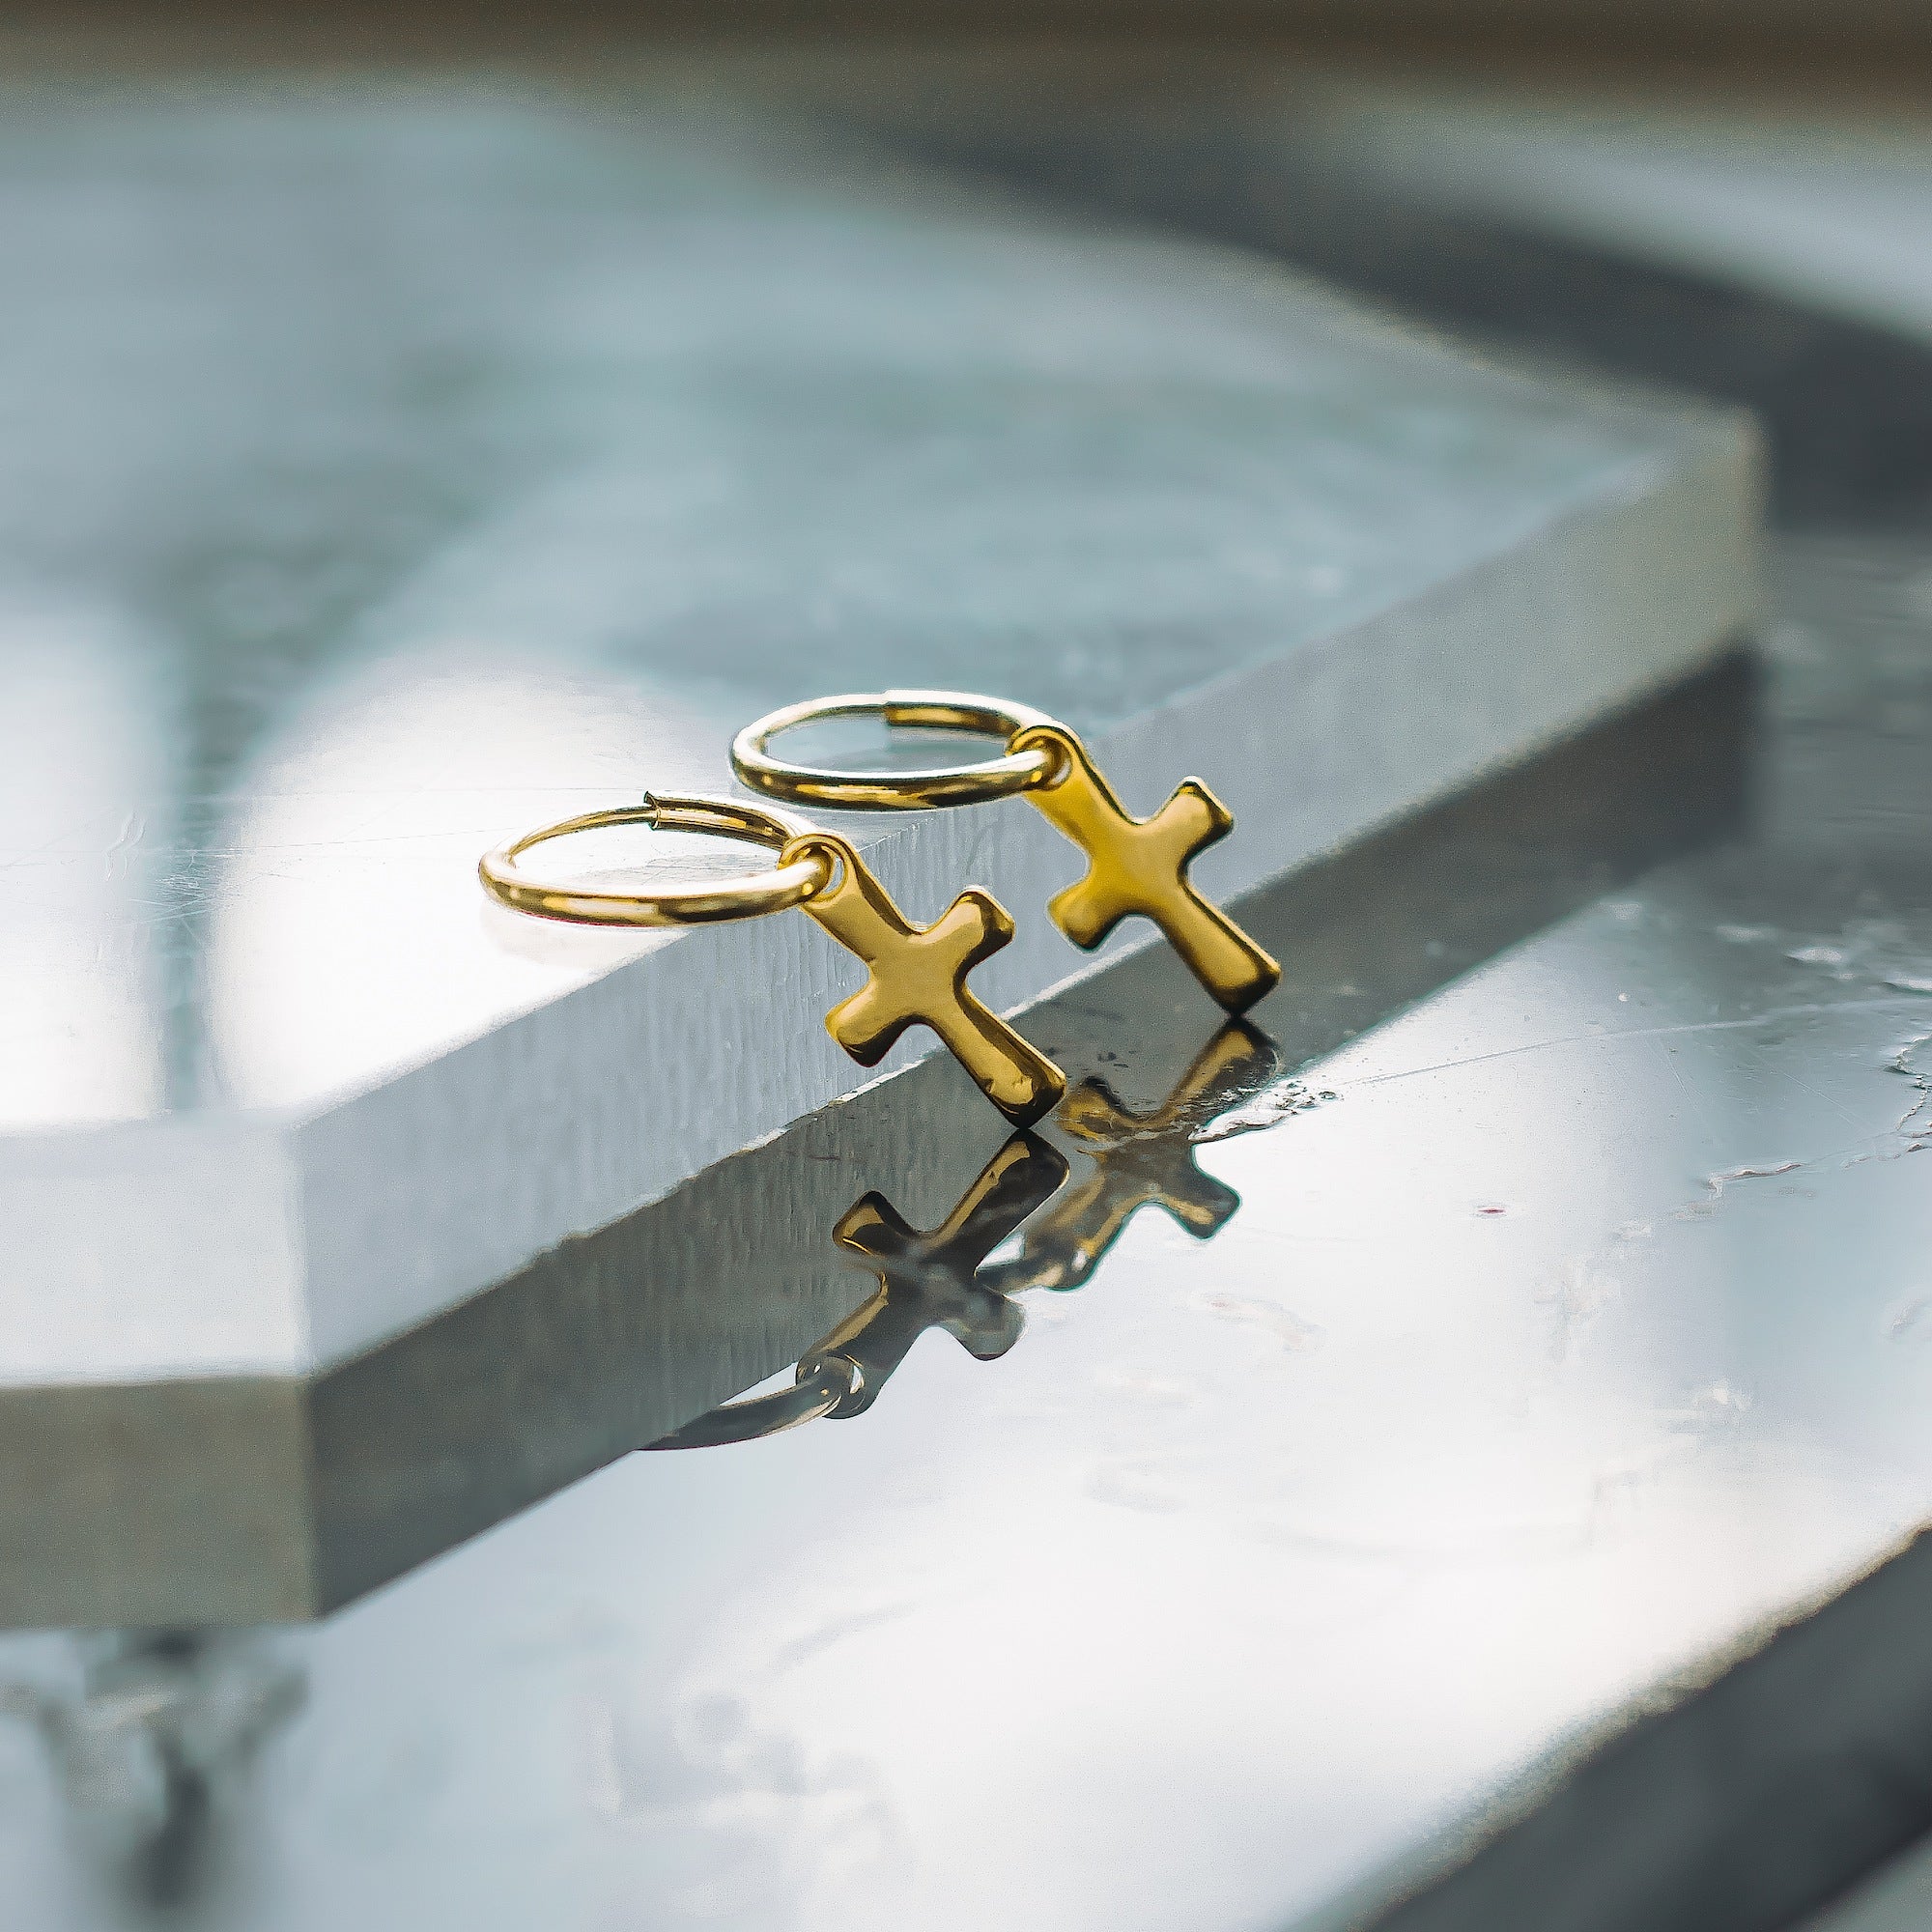 Crucifix Endless Hoop Earrings - Gold (Pair)